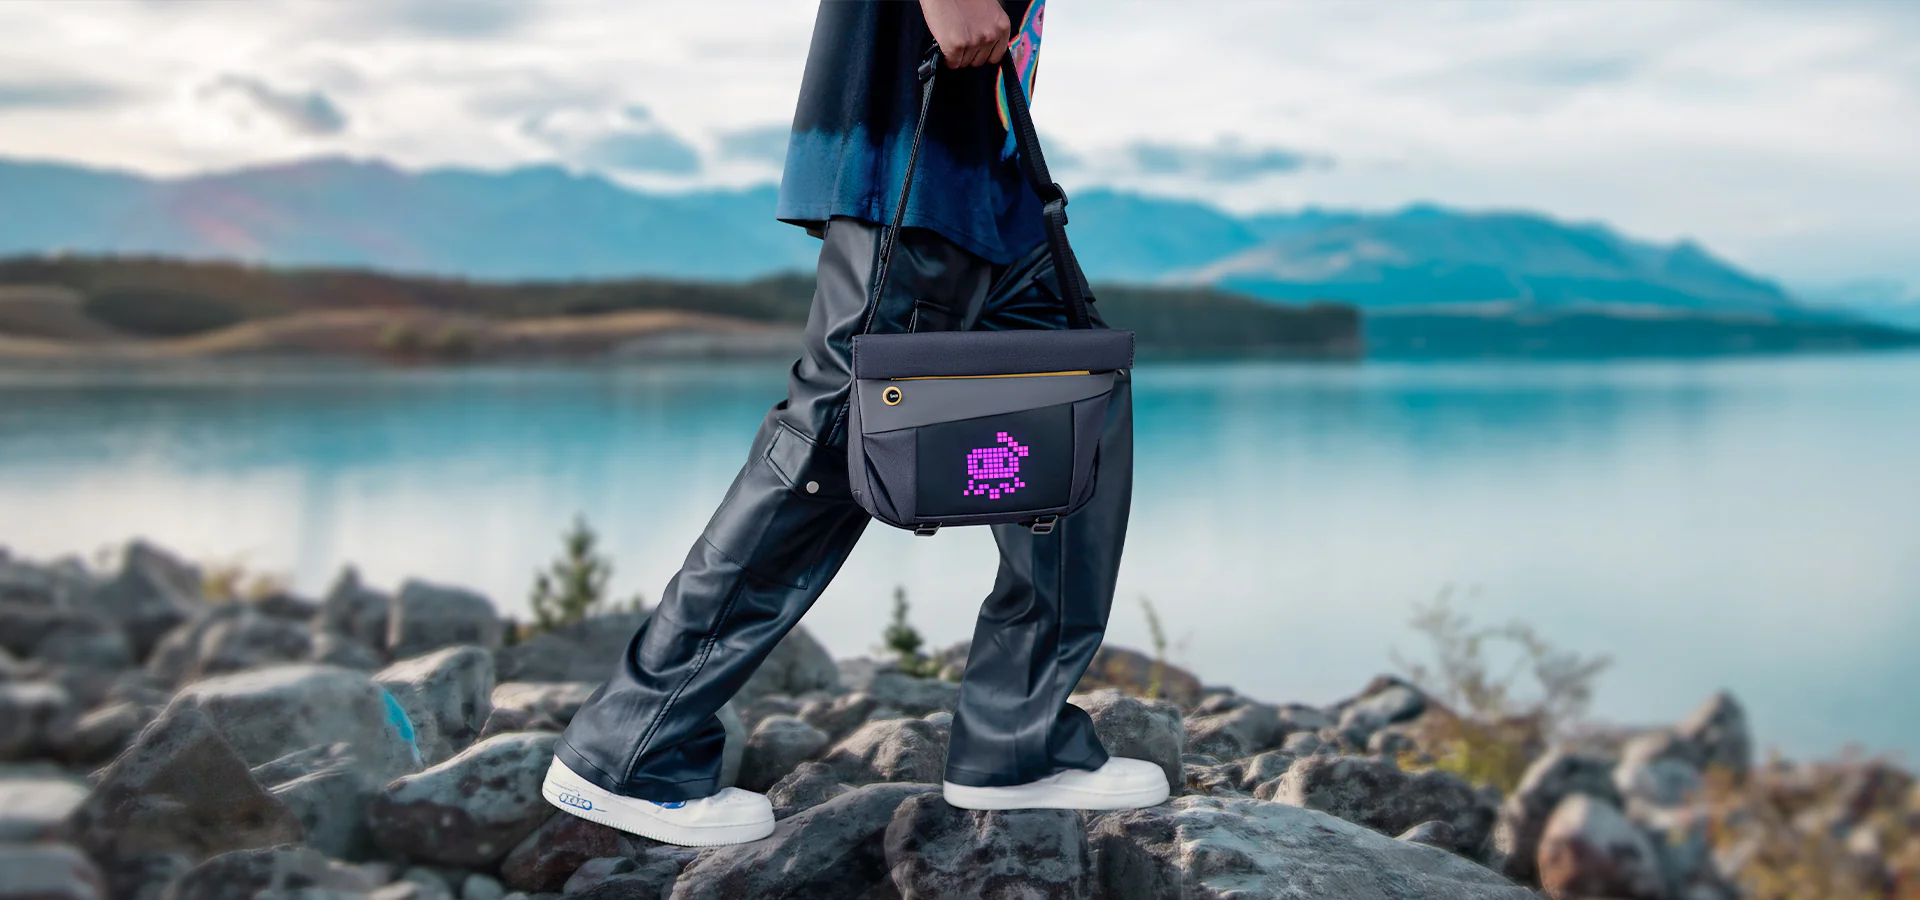 REVIEW: Divoom Pixoo Sling Bag - Cool Pixel Display Backpack